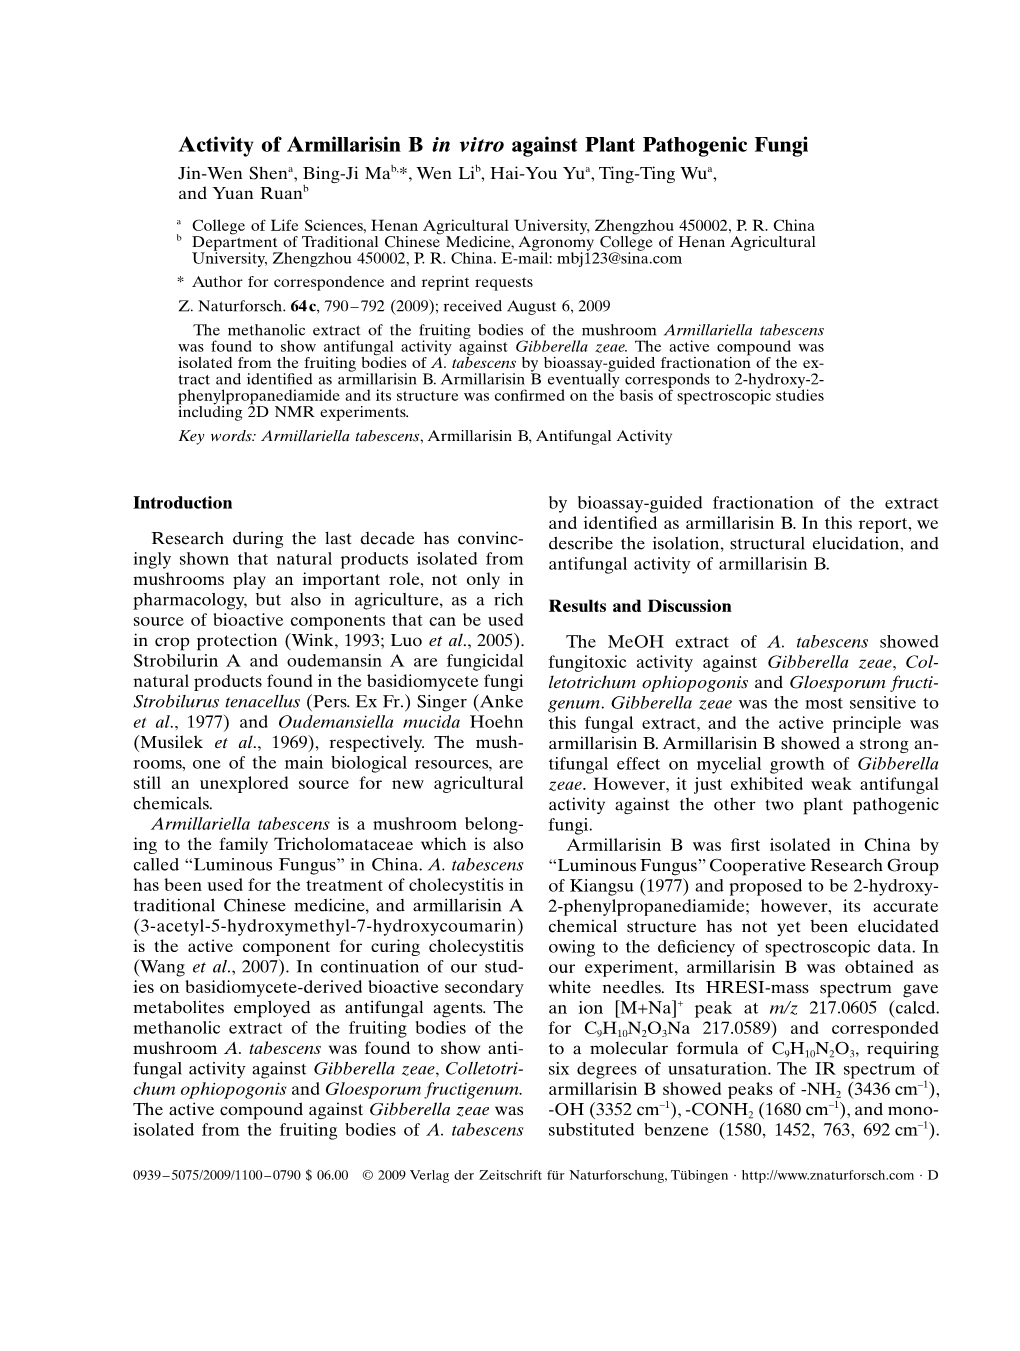 Activity of Armillarisin B in Vitro Against Plant Pathogenic Fungi